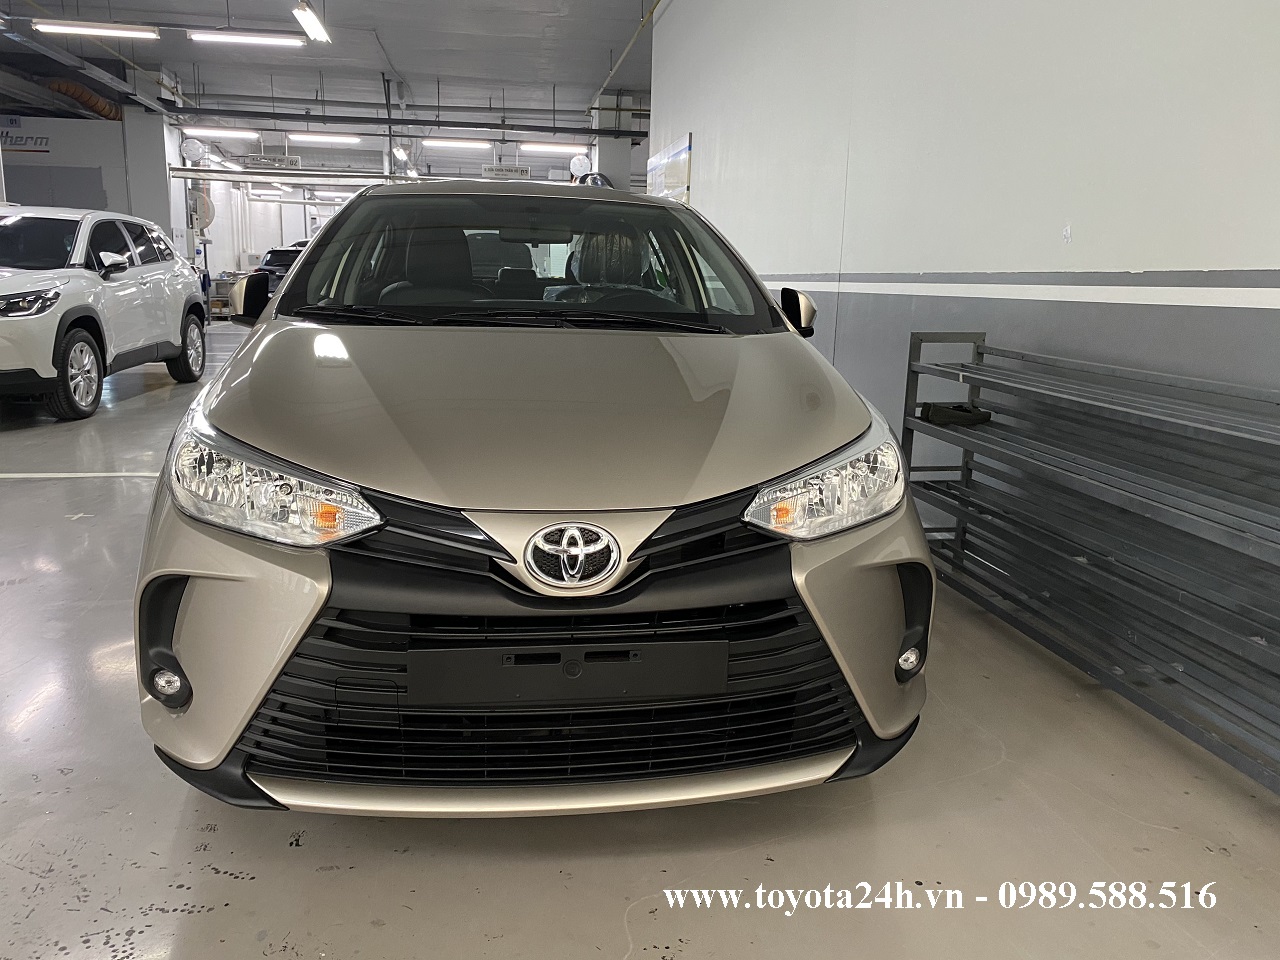 Toyota Vios 1.5E MT Số Sàn Màu Vàng 2022, Hình Ảnh Bảng Giá Xe Lăn Bánh ...